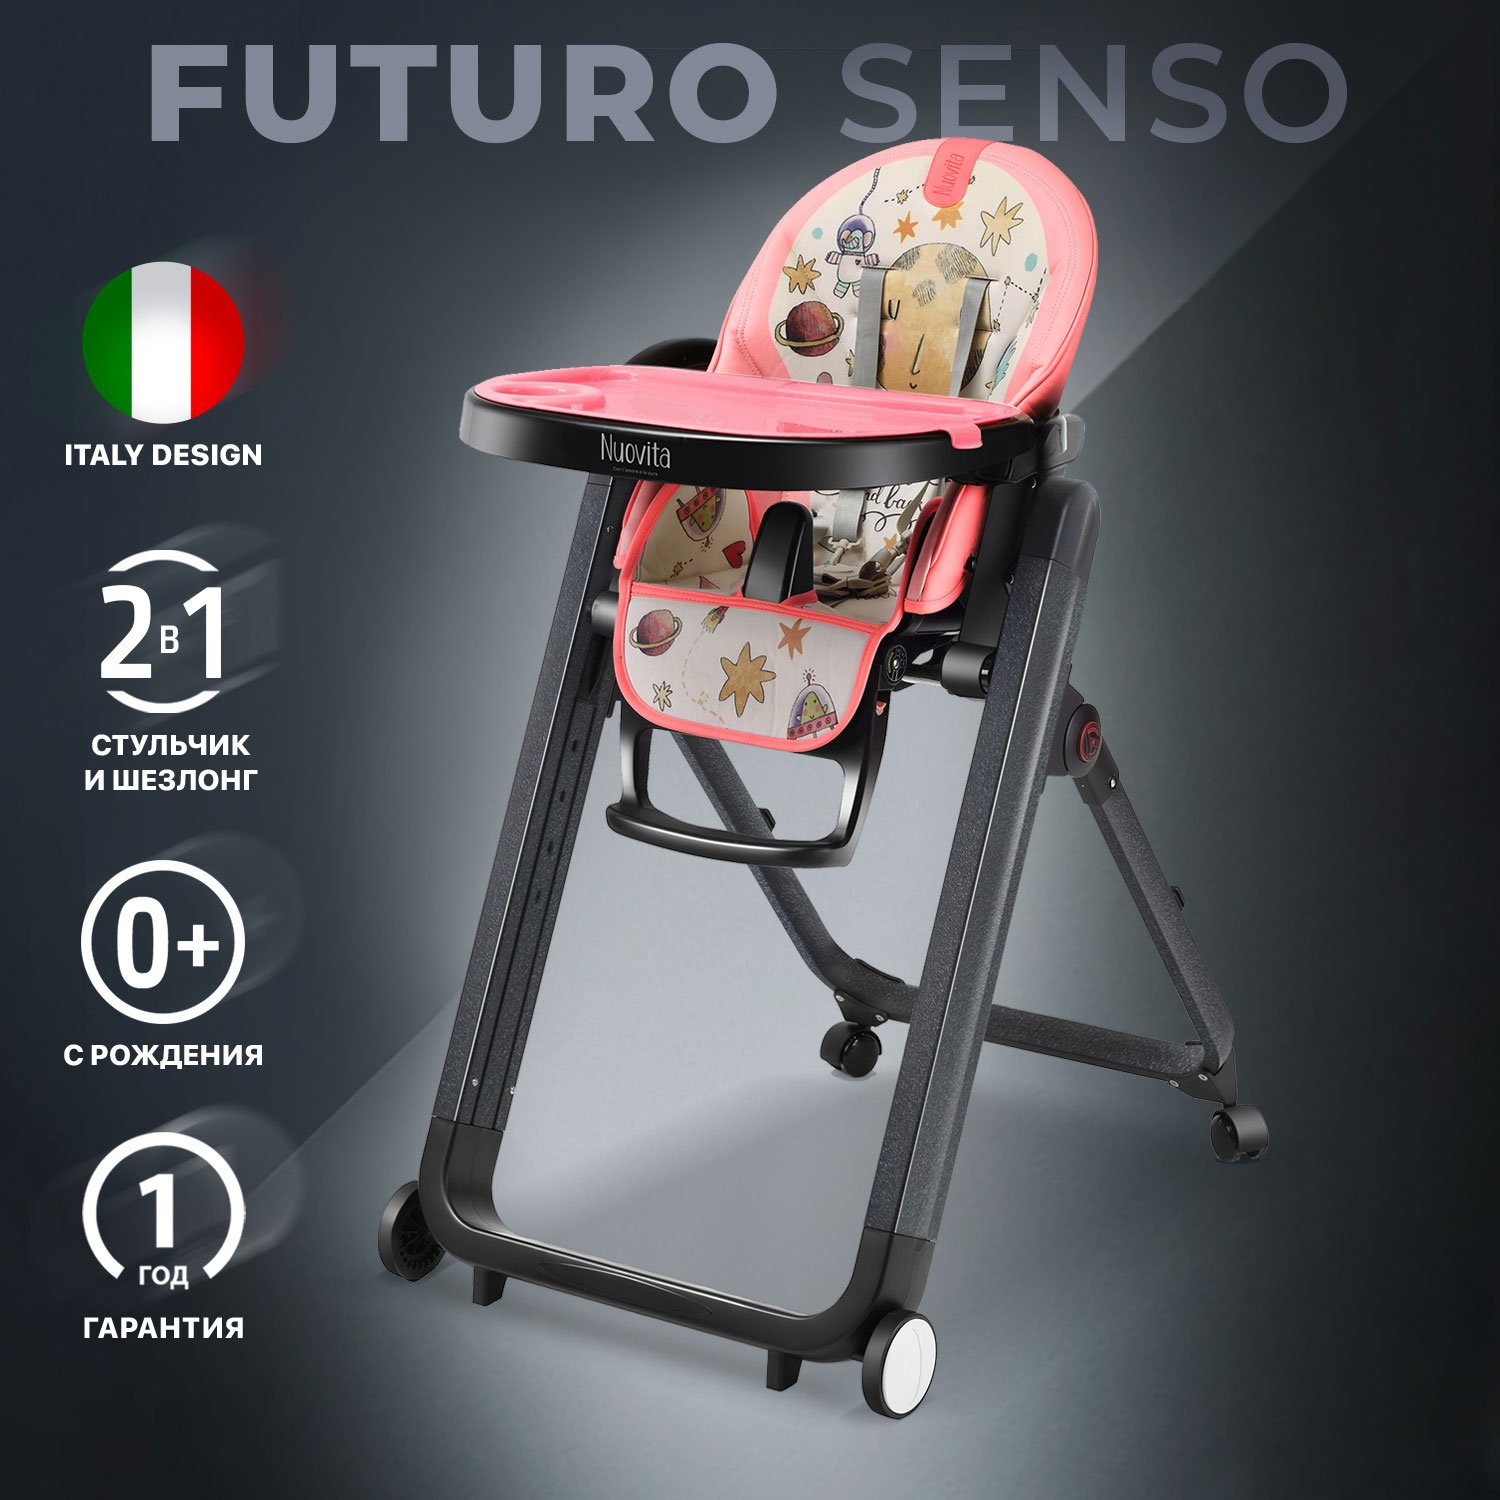 Стульчик для кормления Nuovita Futuro Senso Nero (Cosmo rosa/Розовый космос) парта со стулом fun desk piccolino pink розовый